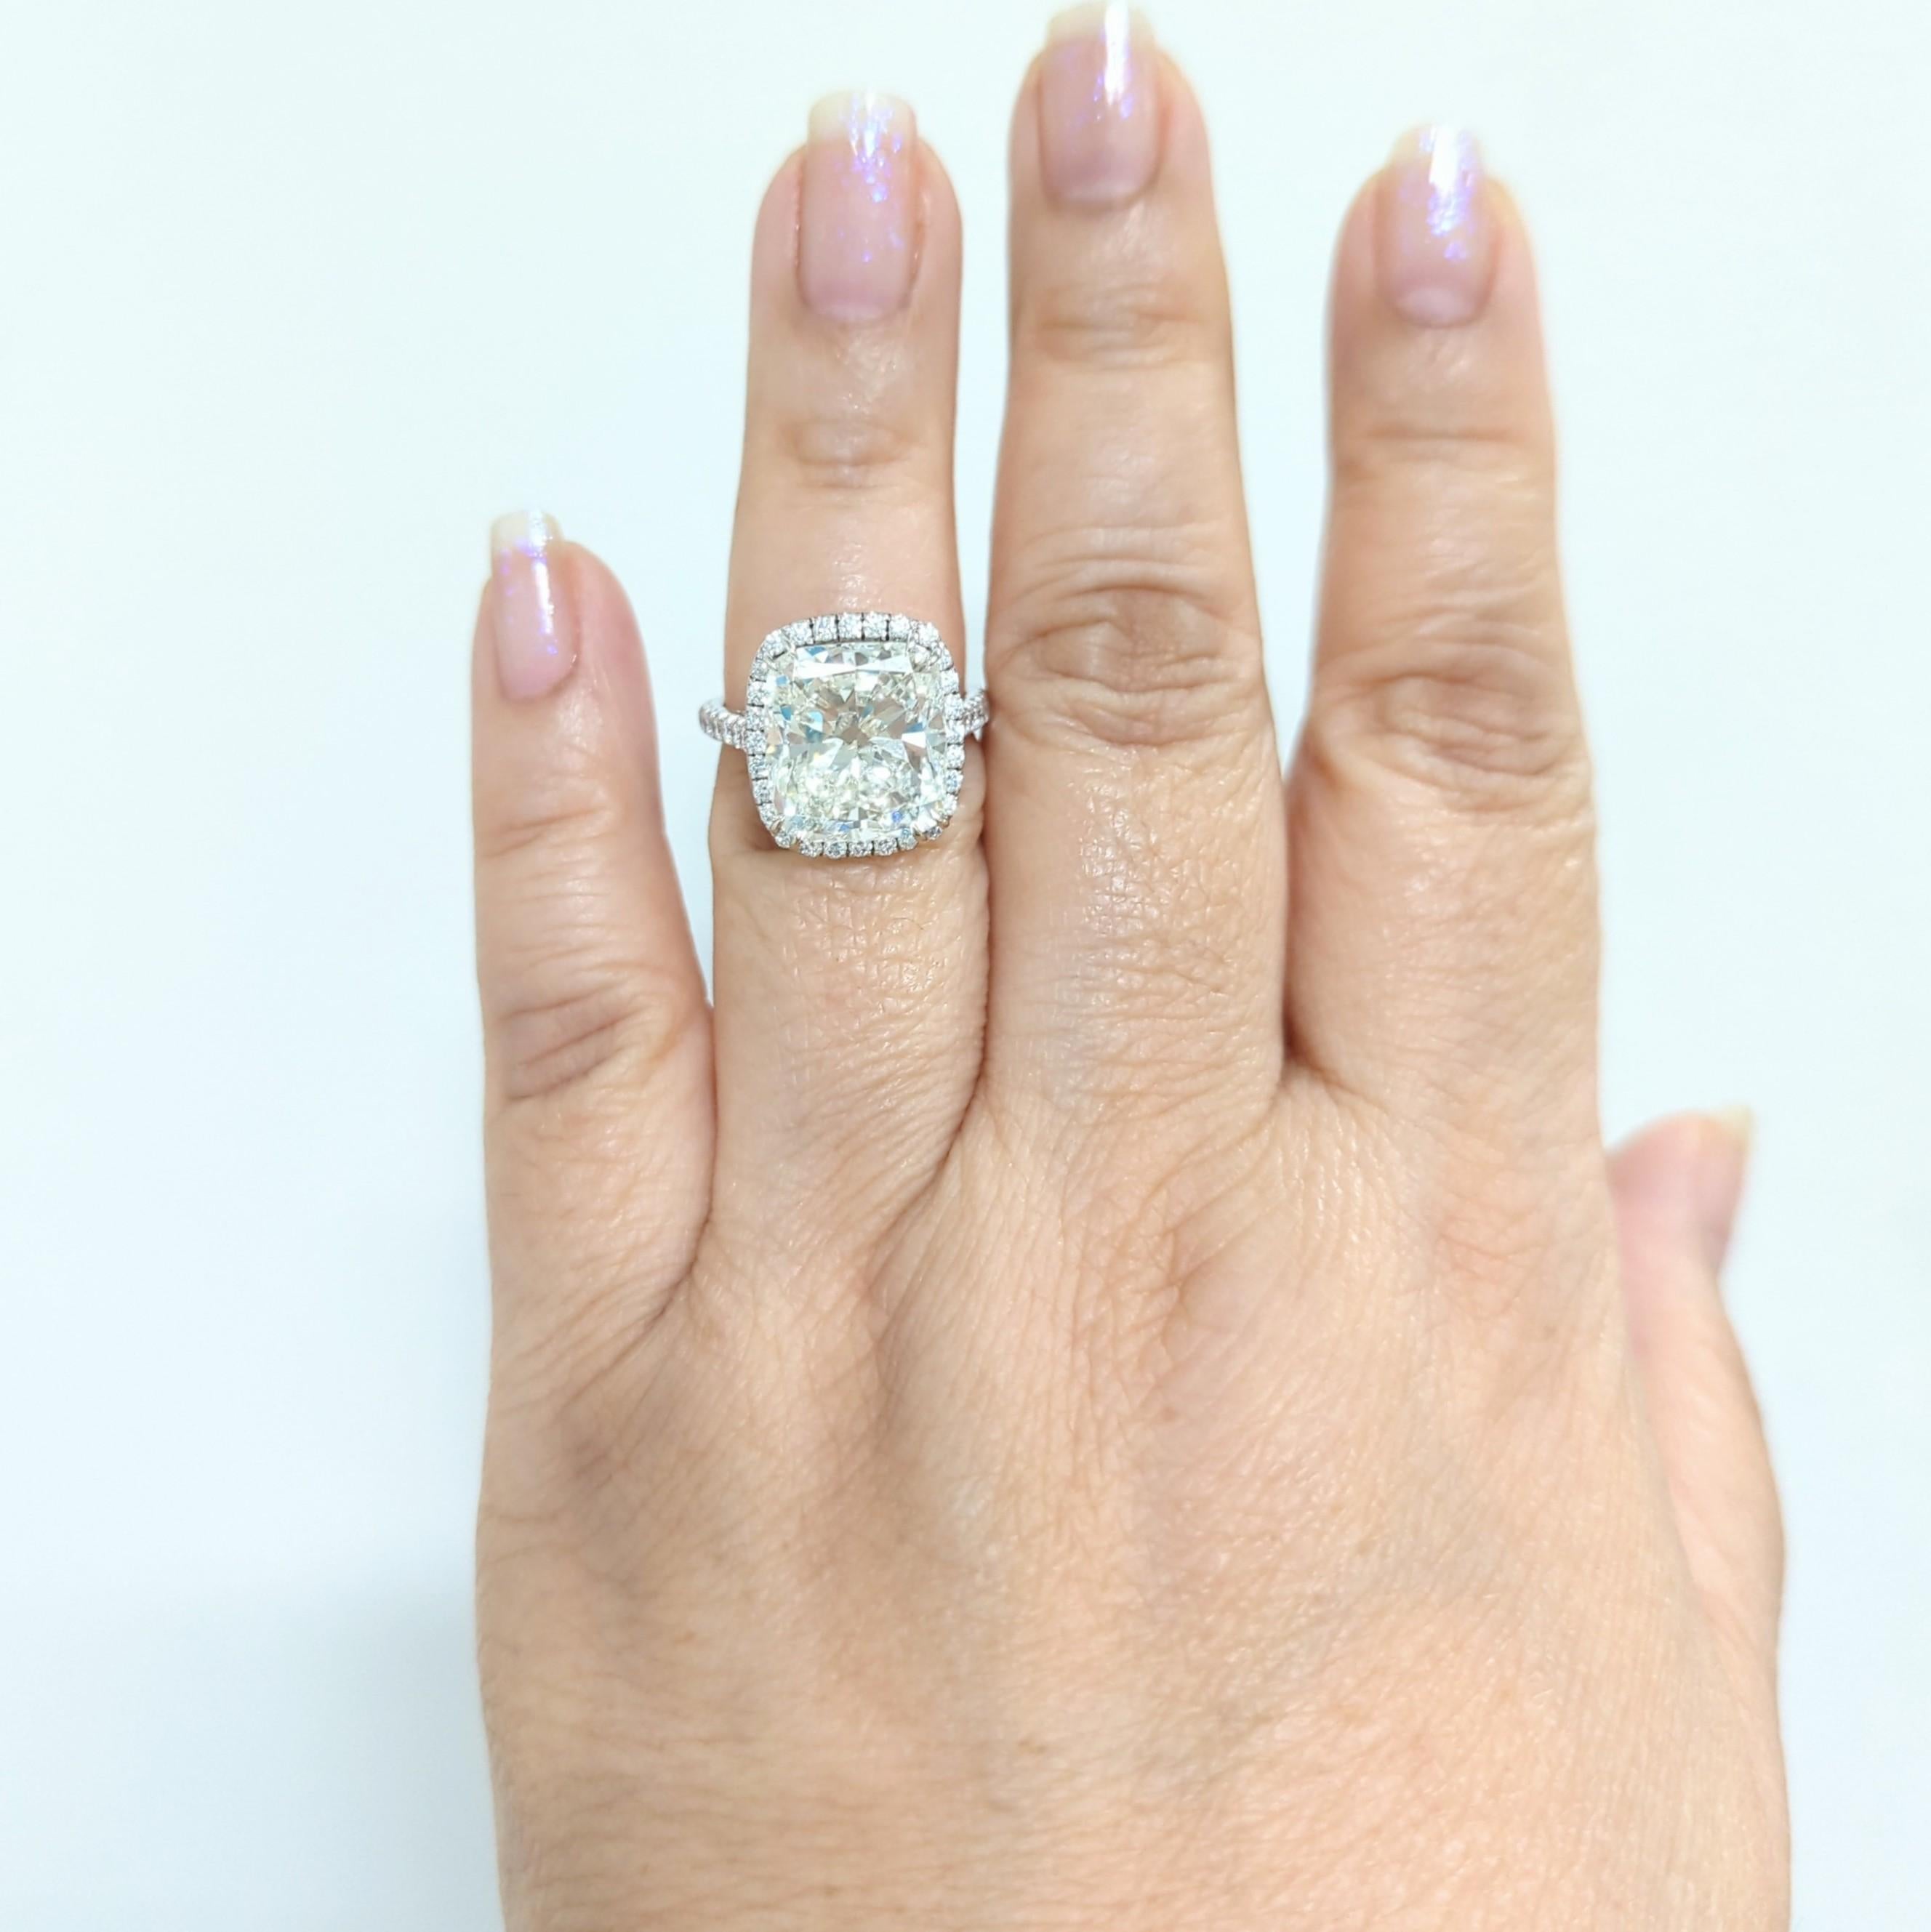 Wunderschöne GIA 9.01 ct. K SI 2 weißes Diamantkissen mit kleineren runden weißen Diamanten guter Qualität.  Handgefertigt aus 18k Weißgold.  Ringgröße 6,75.  Inklusive GIA-Zertifikat.